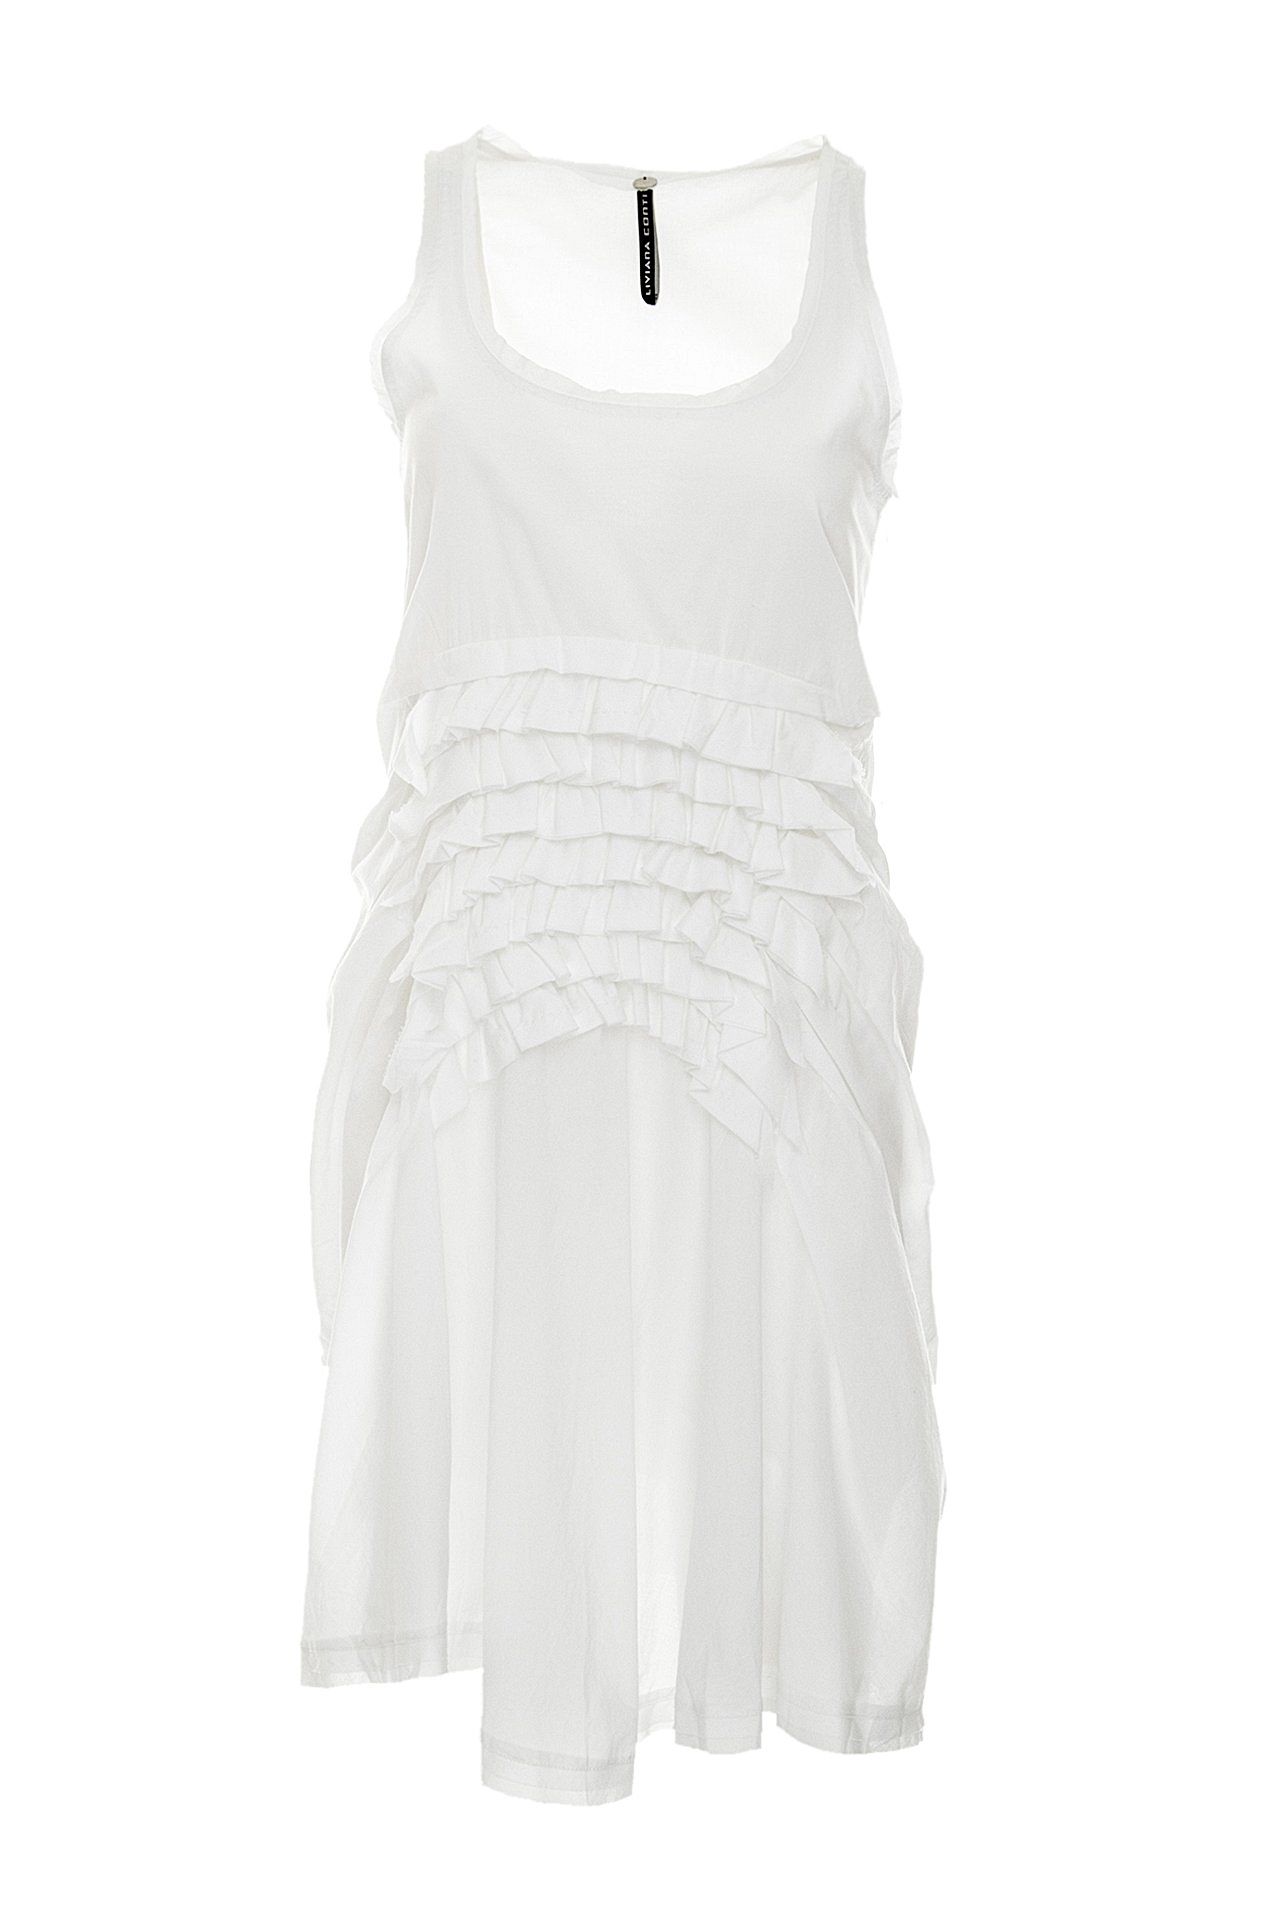 Одежда женская Платье LIVIANA CONTI (L2E603/12.1). Купить за 8720 руб.